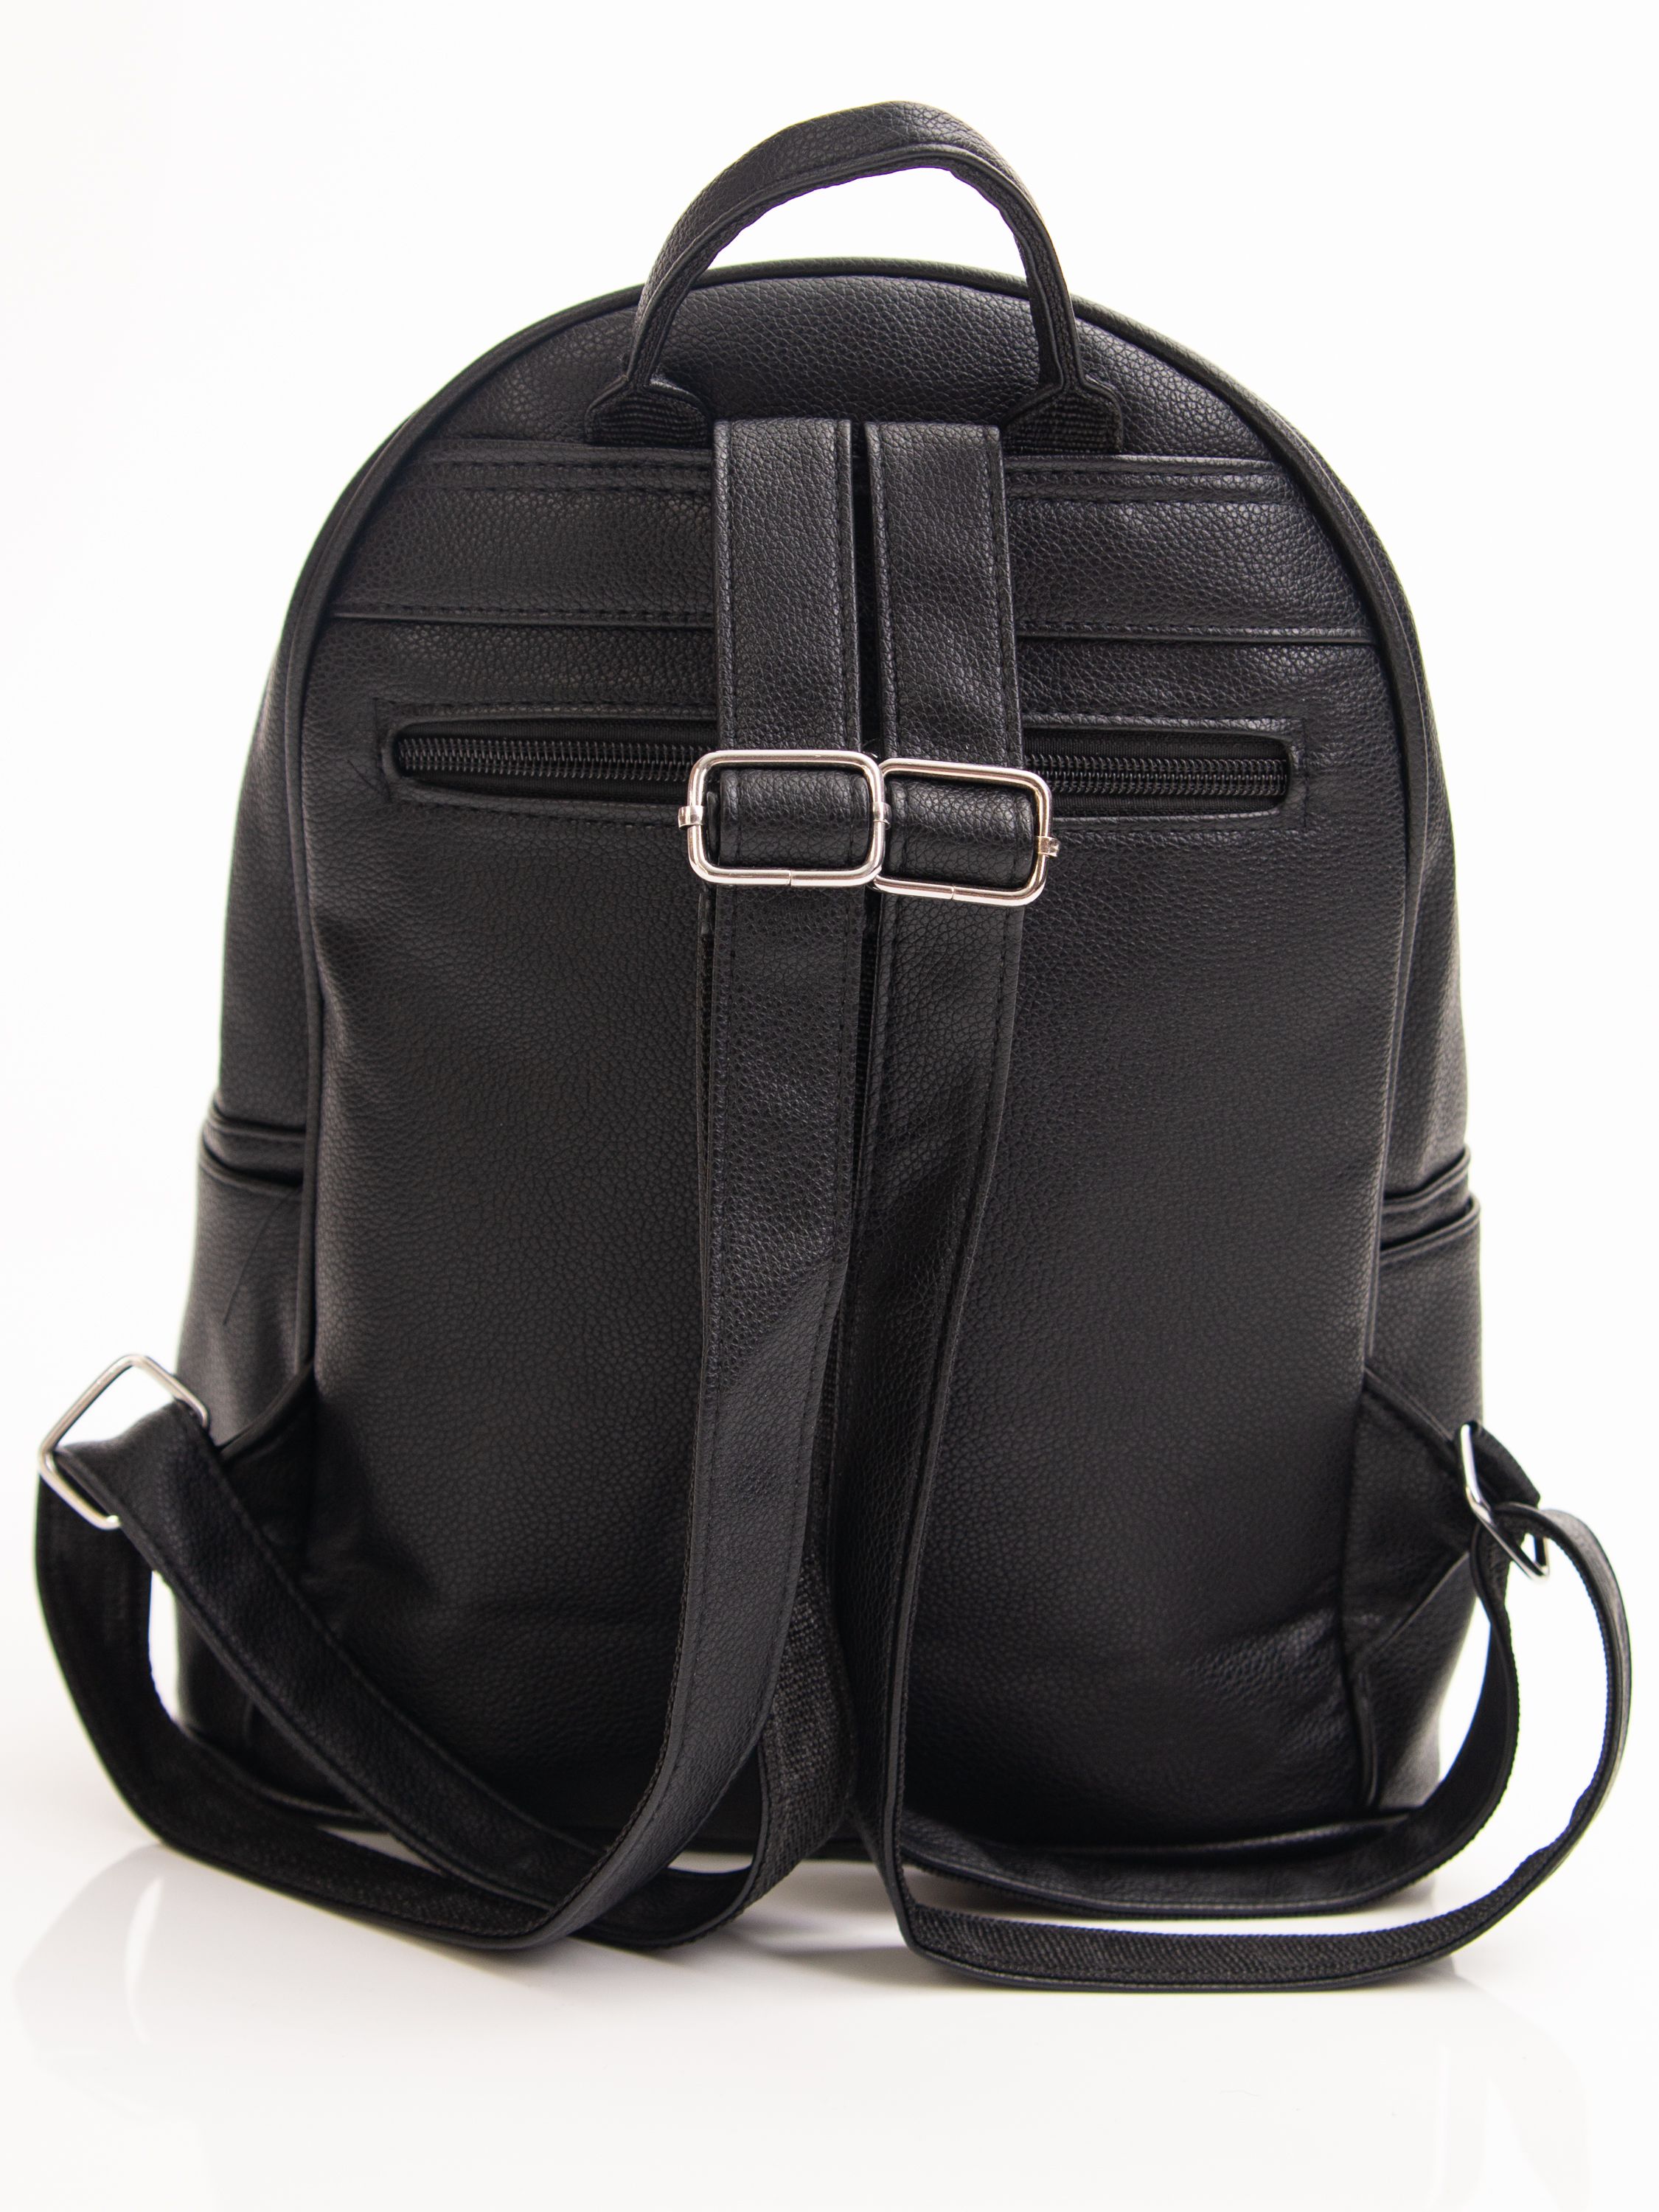 Рюкзак женский стильный экокожа черный / сумка рюкзачок кожаный для .